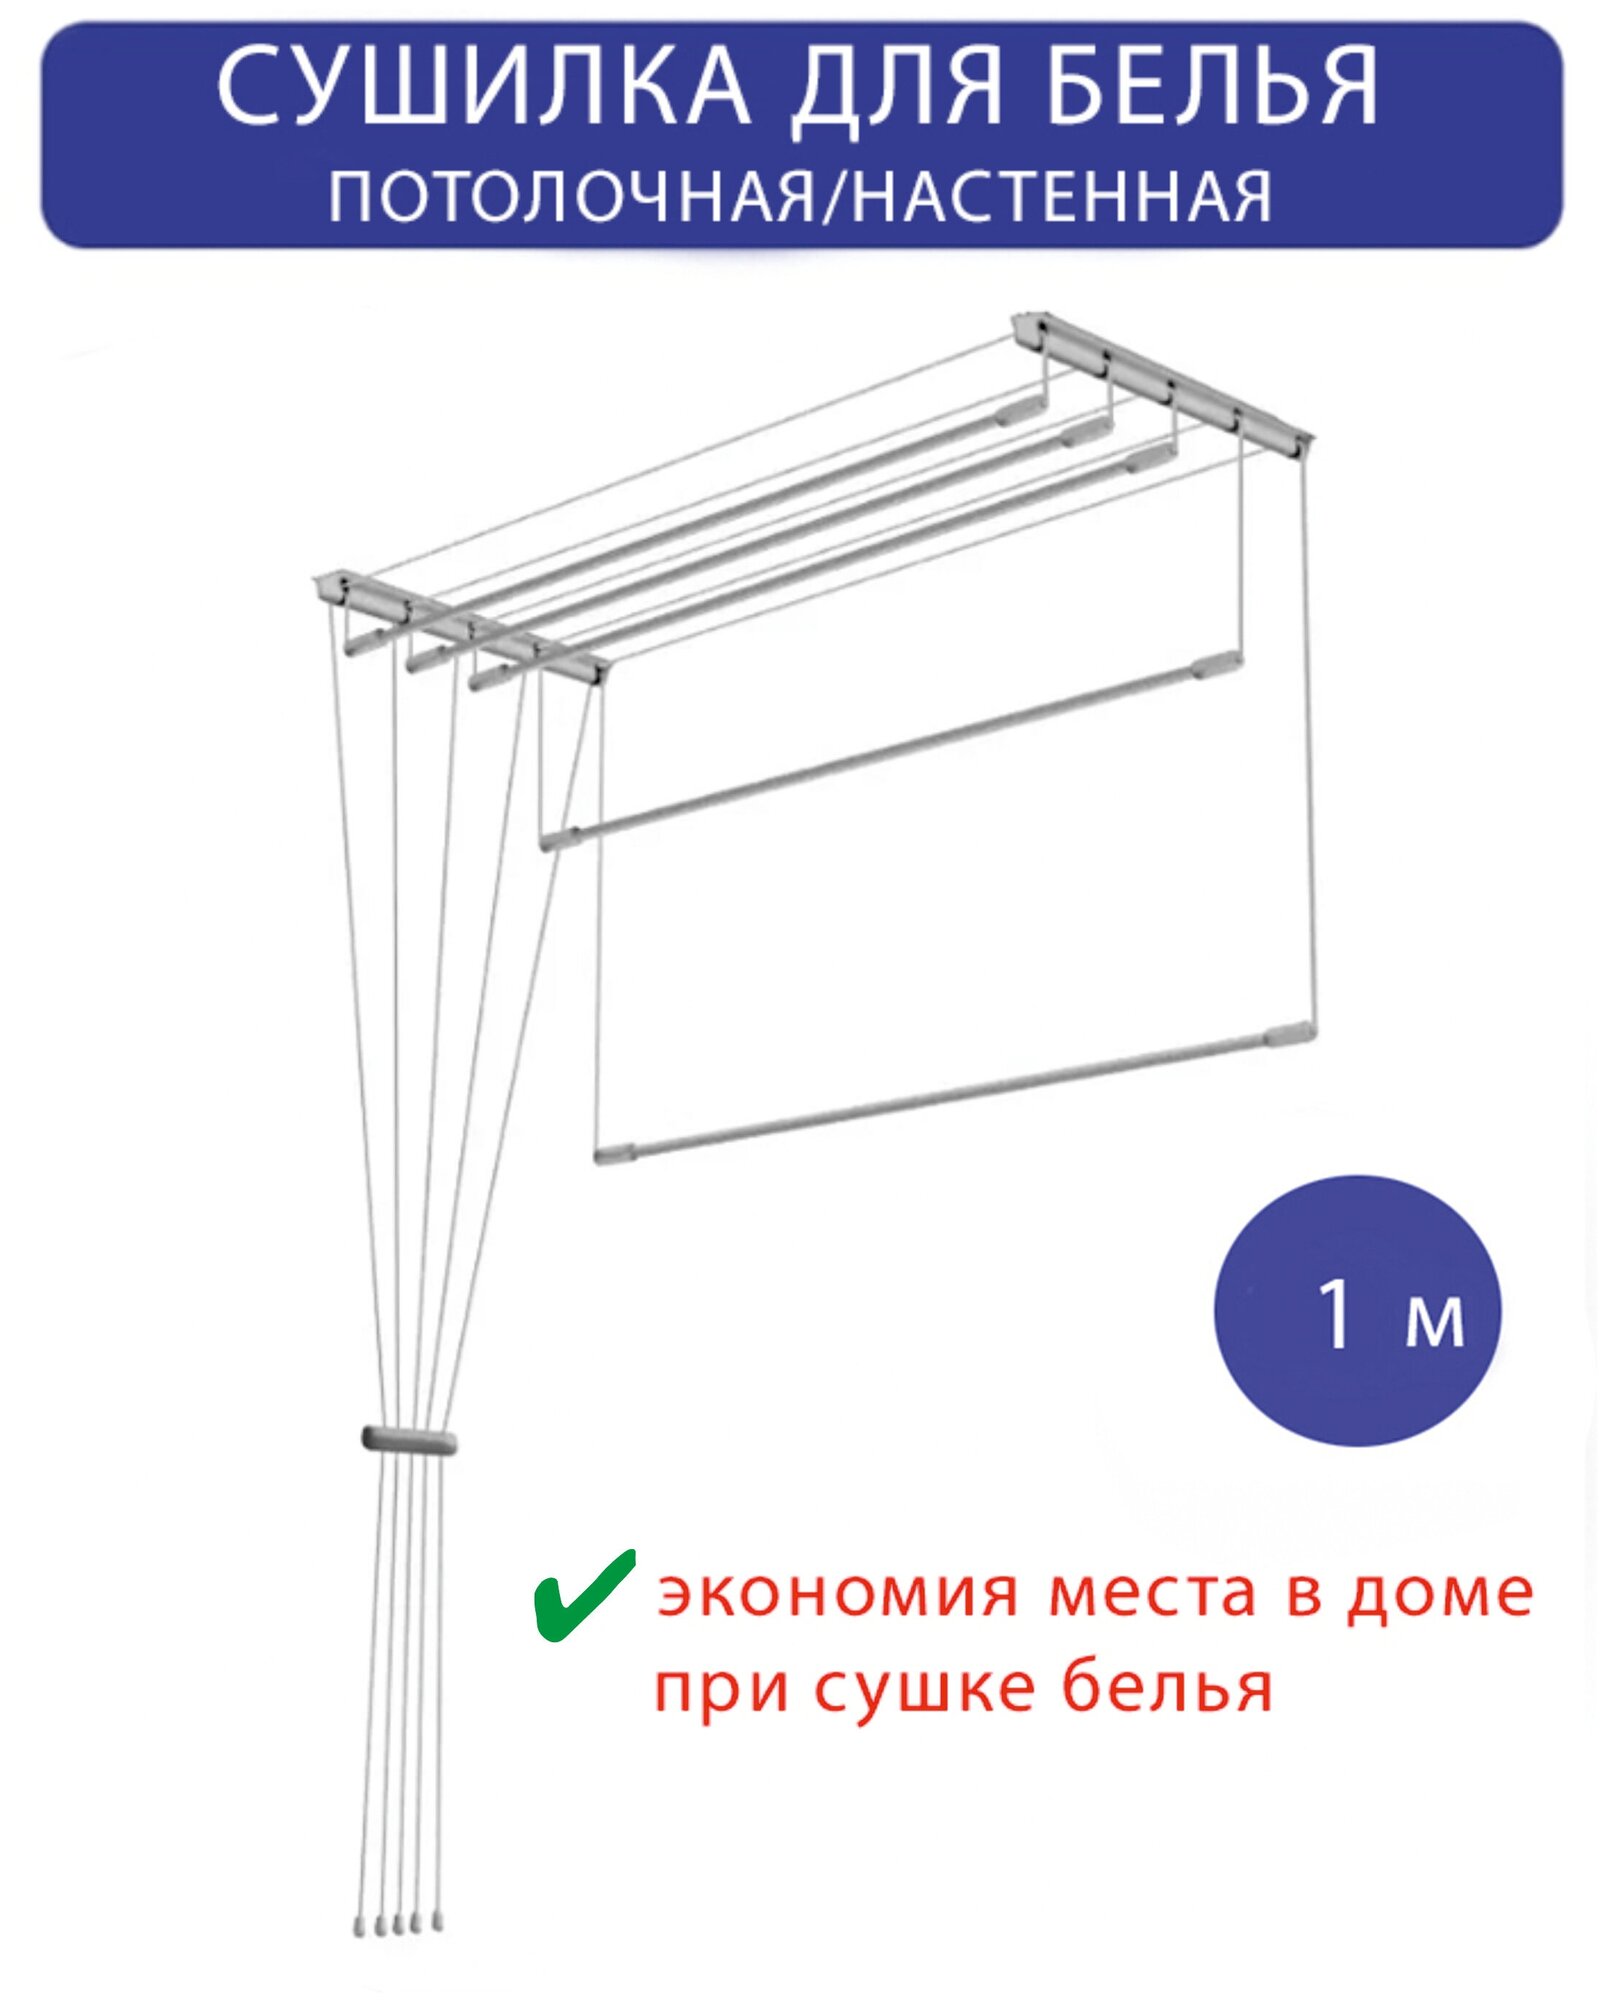 Сушилка для белья настенная/потолочная в ванную или балкон, 1м